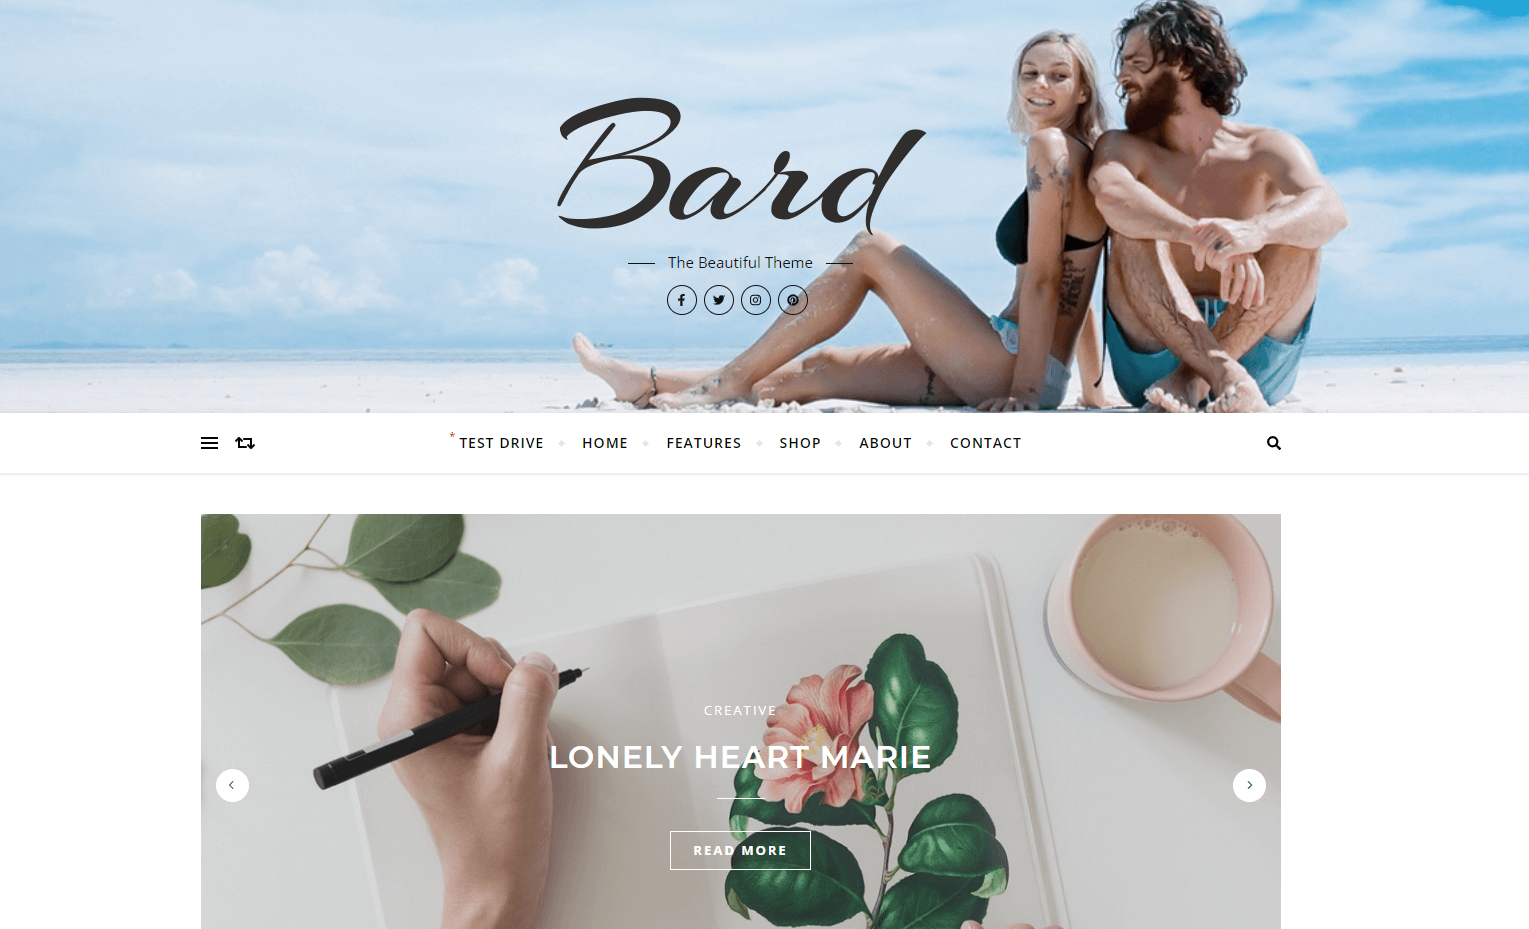 Exemplo de site com o tema Bard do WordPress 